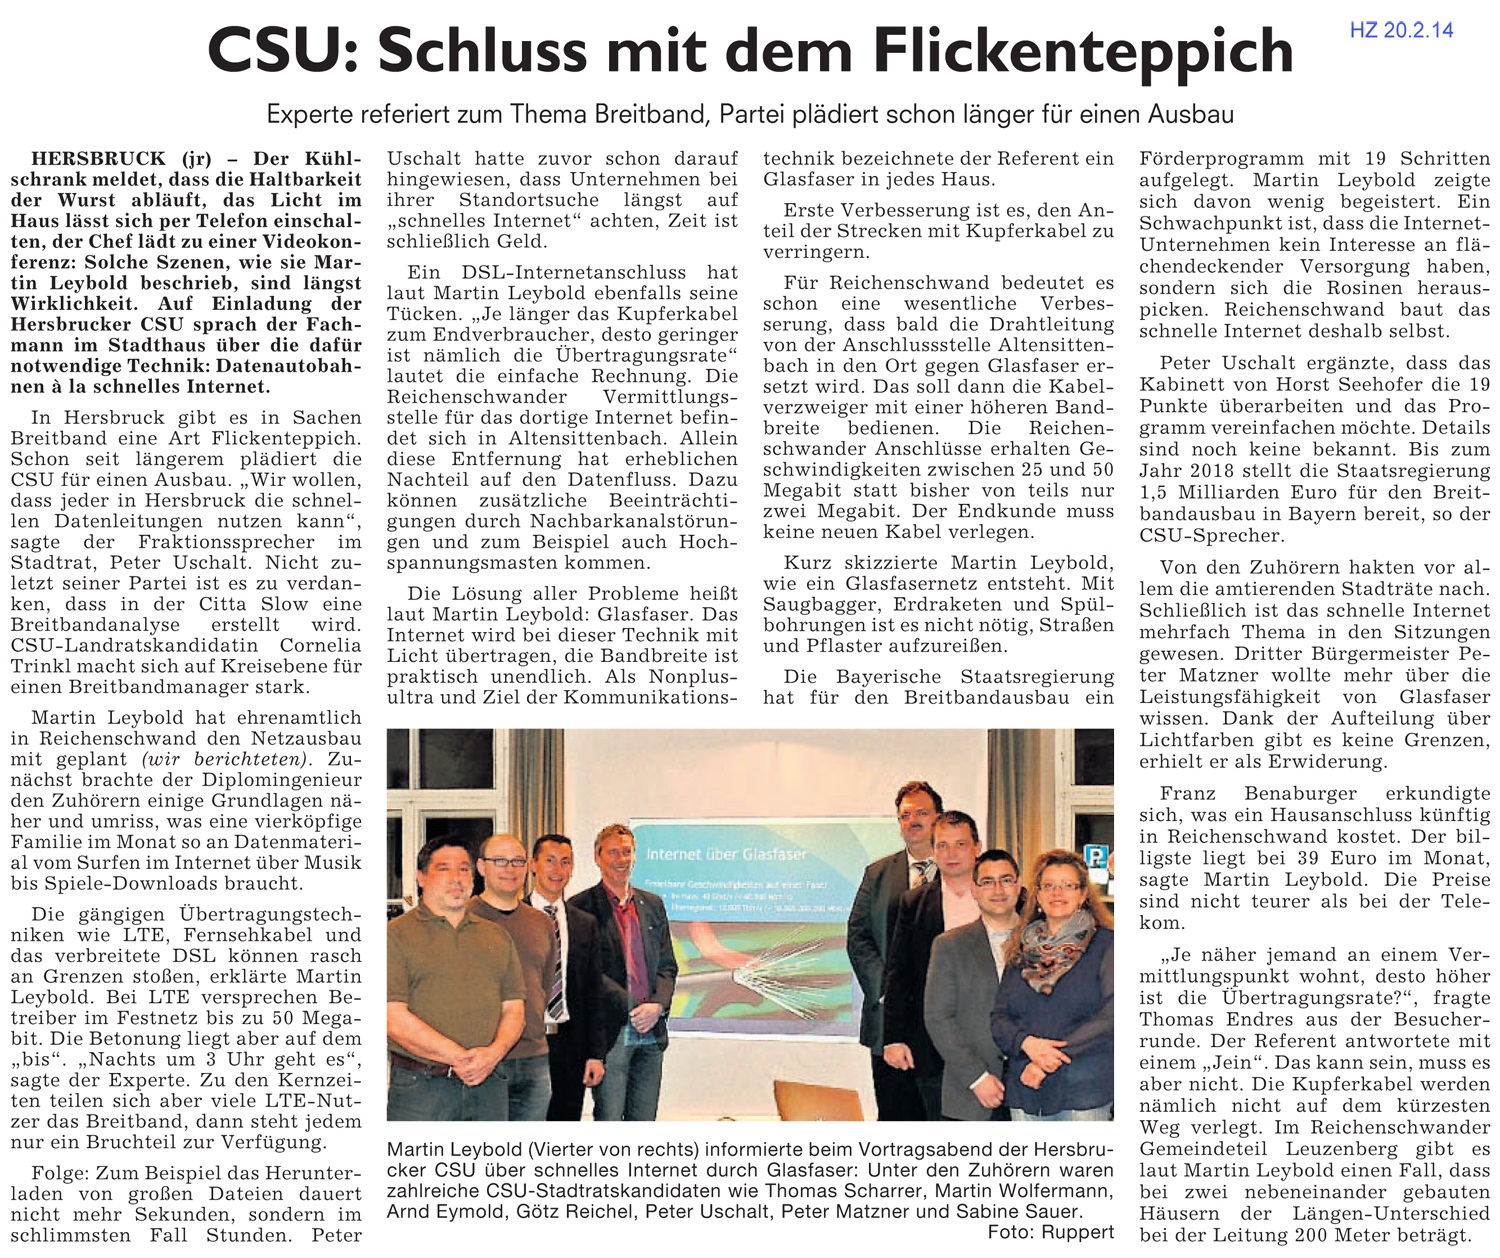 Pressebericht der Hersbrucker Zeitung vom 20.02.2014